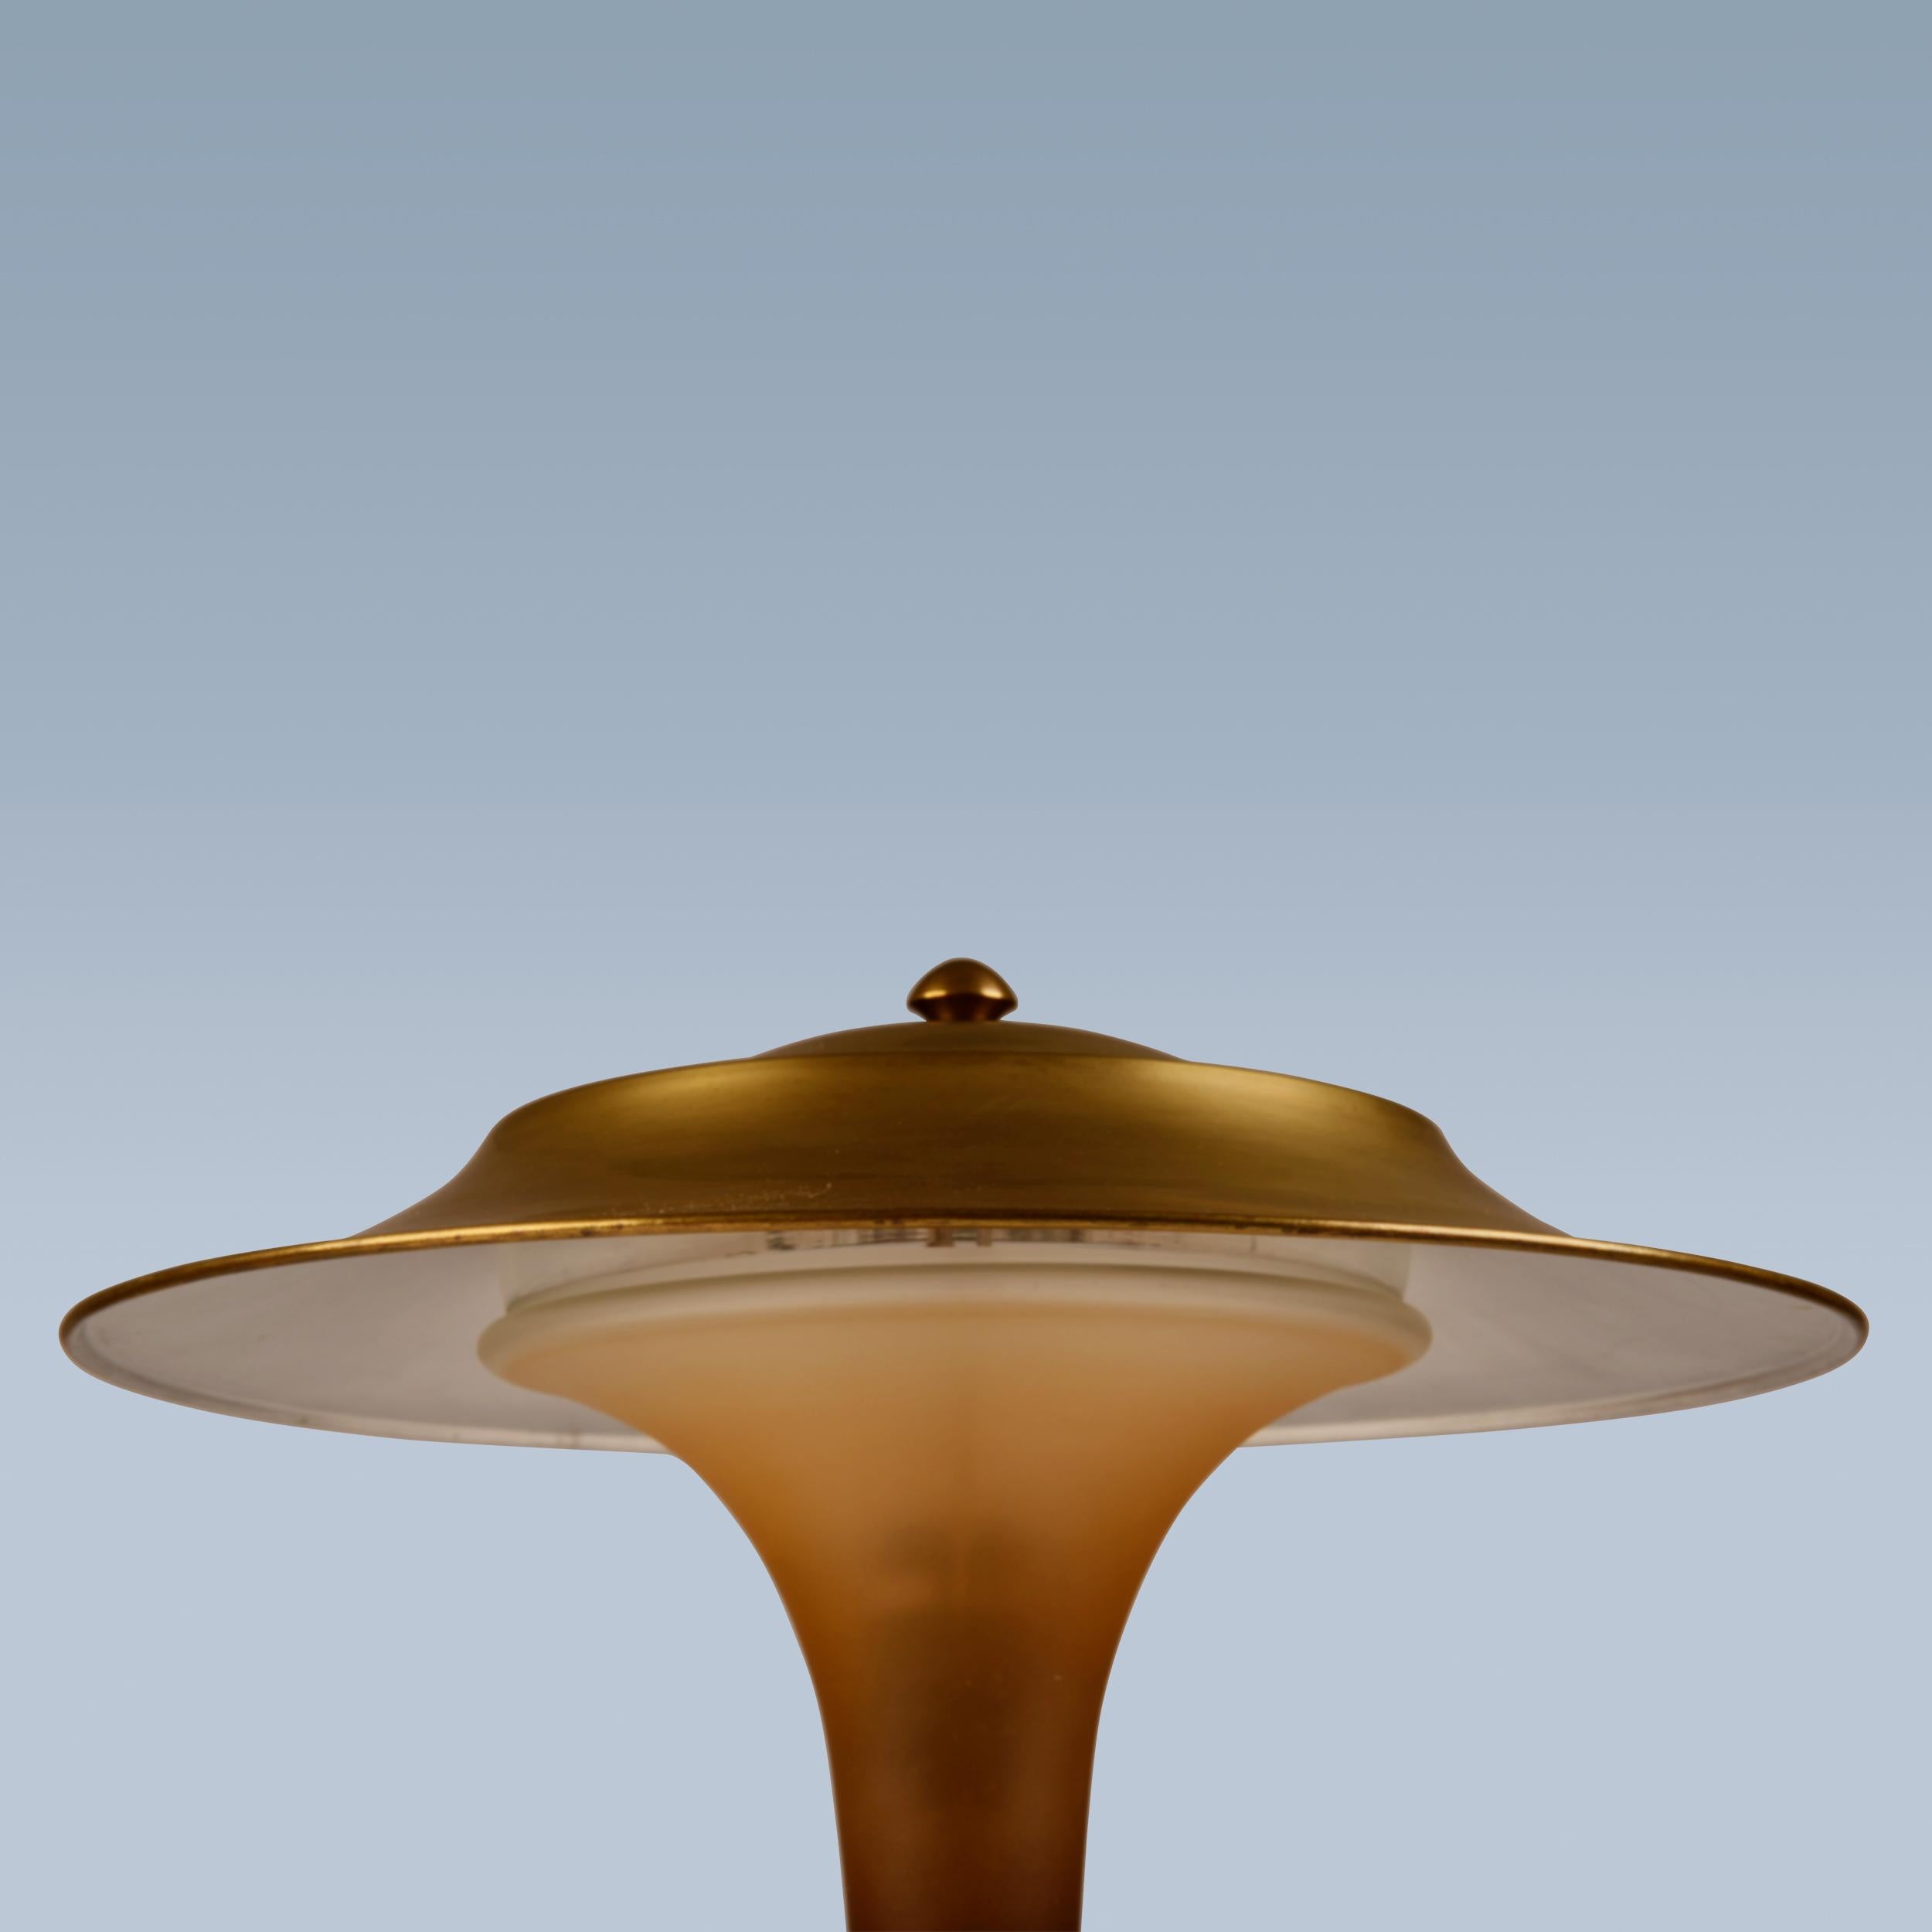 Diese Tischlampe mit Fuß aus patiniertem Messing, Schirm und Stiel aus mattiertem, bernsteinfarbenem Glas wurde von Fog & Mørup ca. in den 1930er Jahren hergestellt.
Die Lampe ist die so genannte 